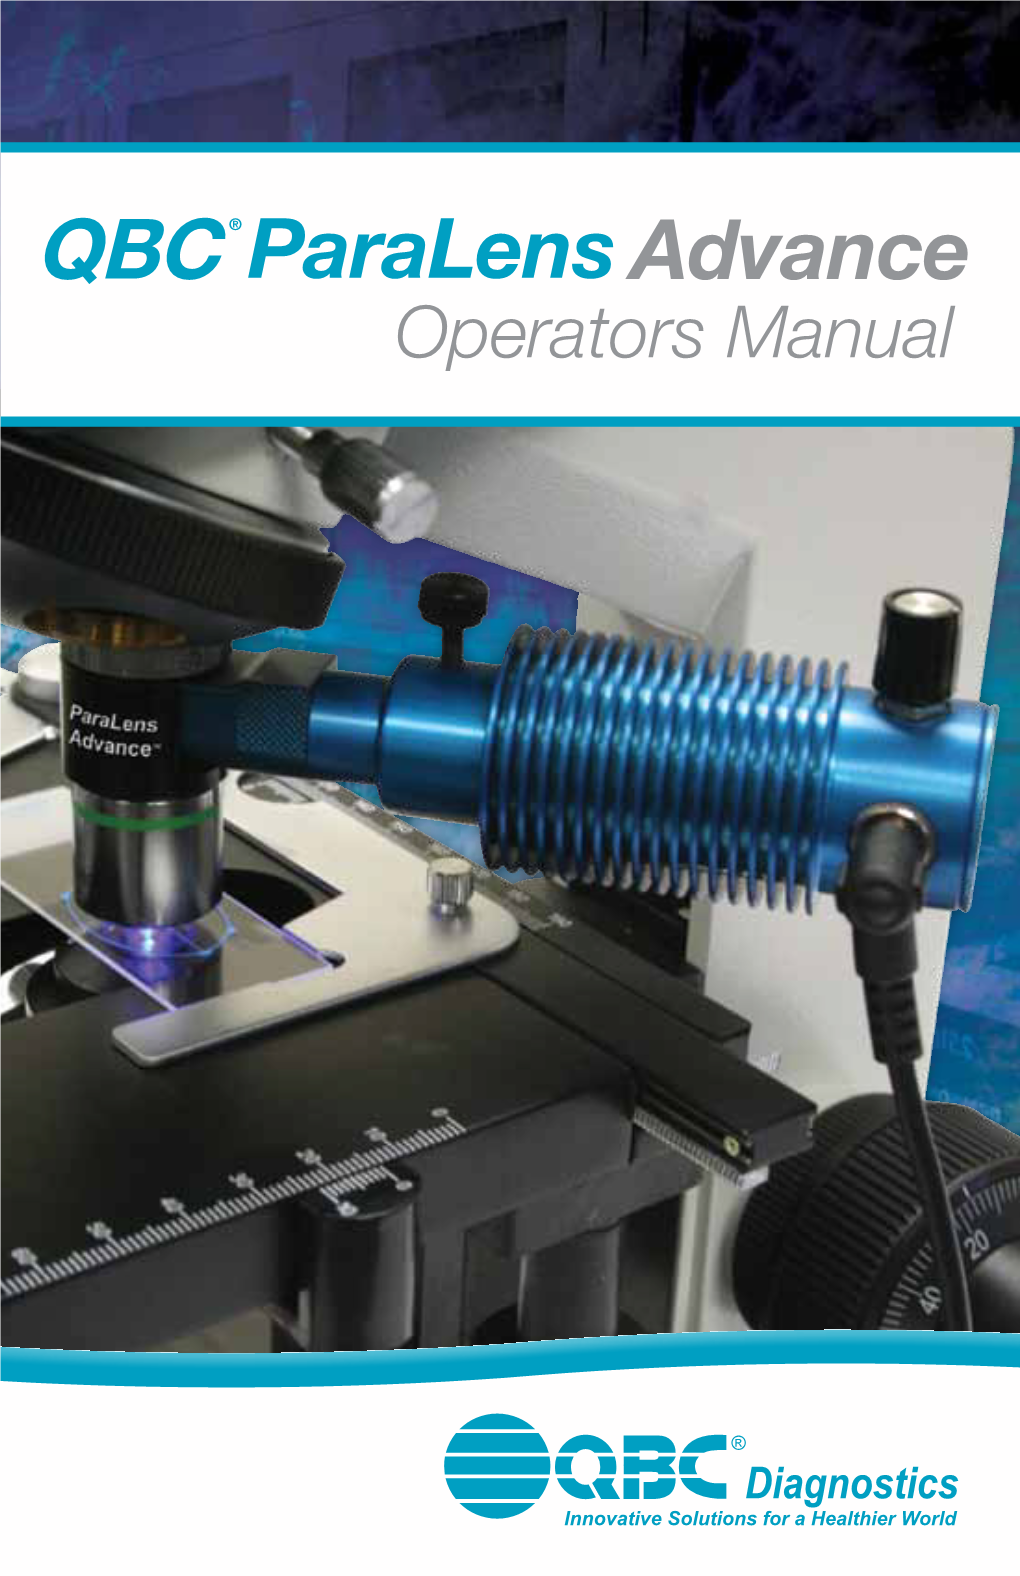 Paralens Advance Operators Manual